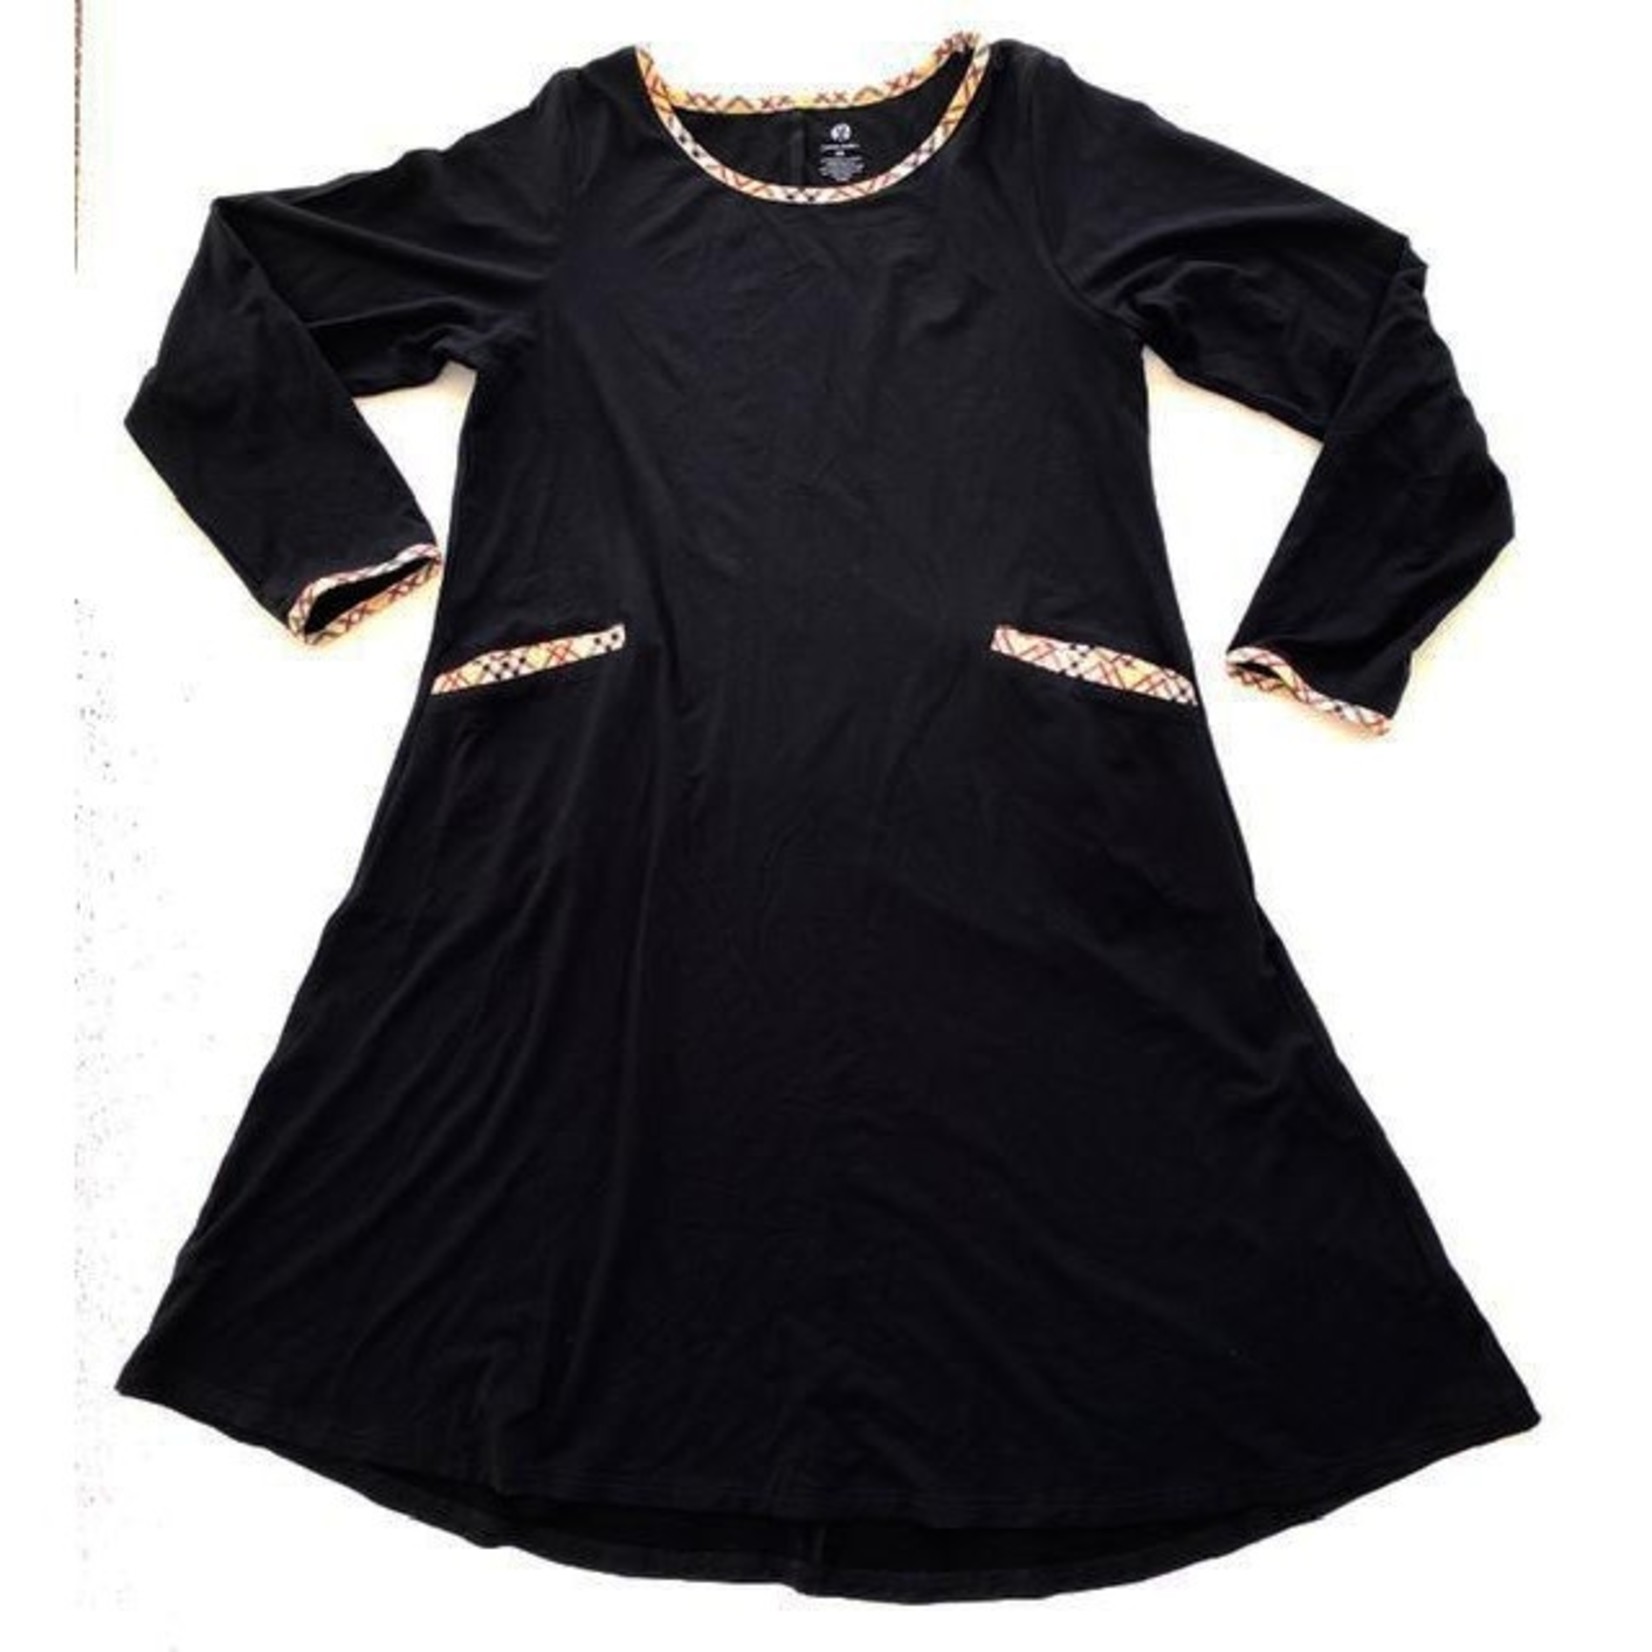 Charlie's Project Black L/S Dress w/Plaid Trim & Pockets